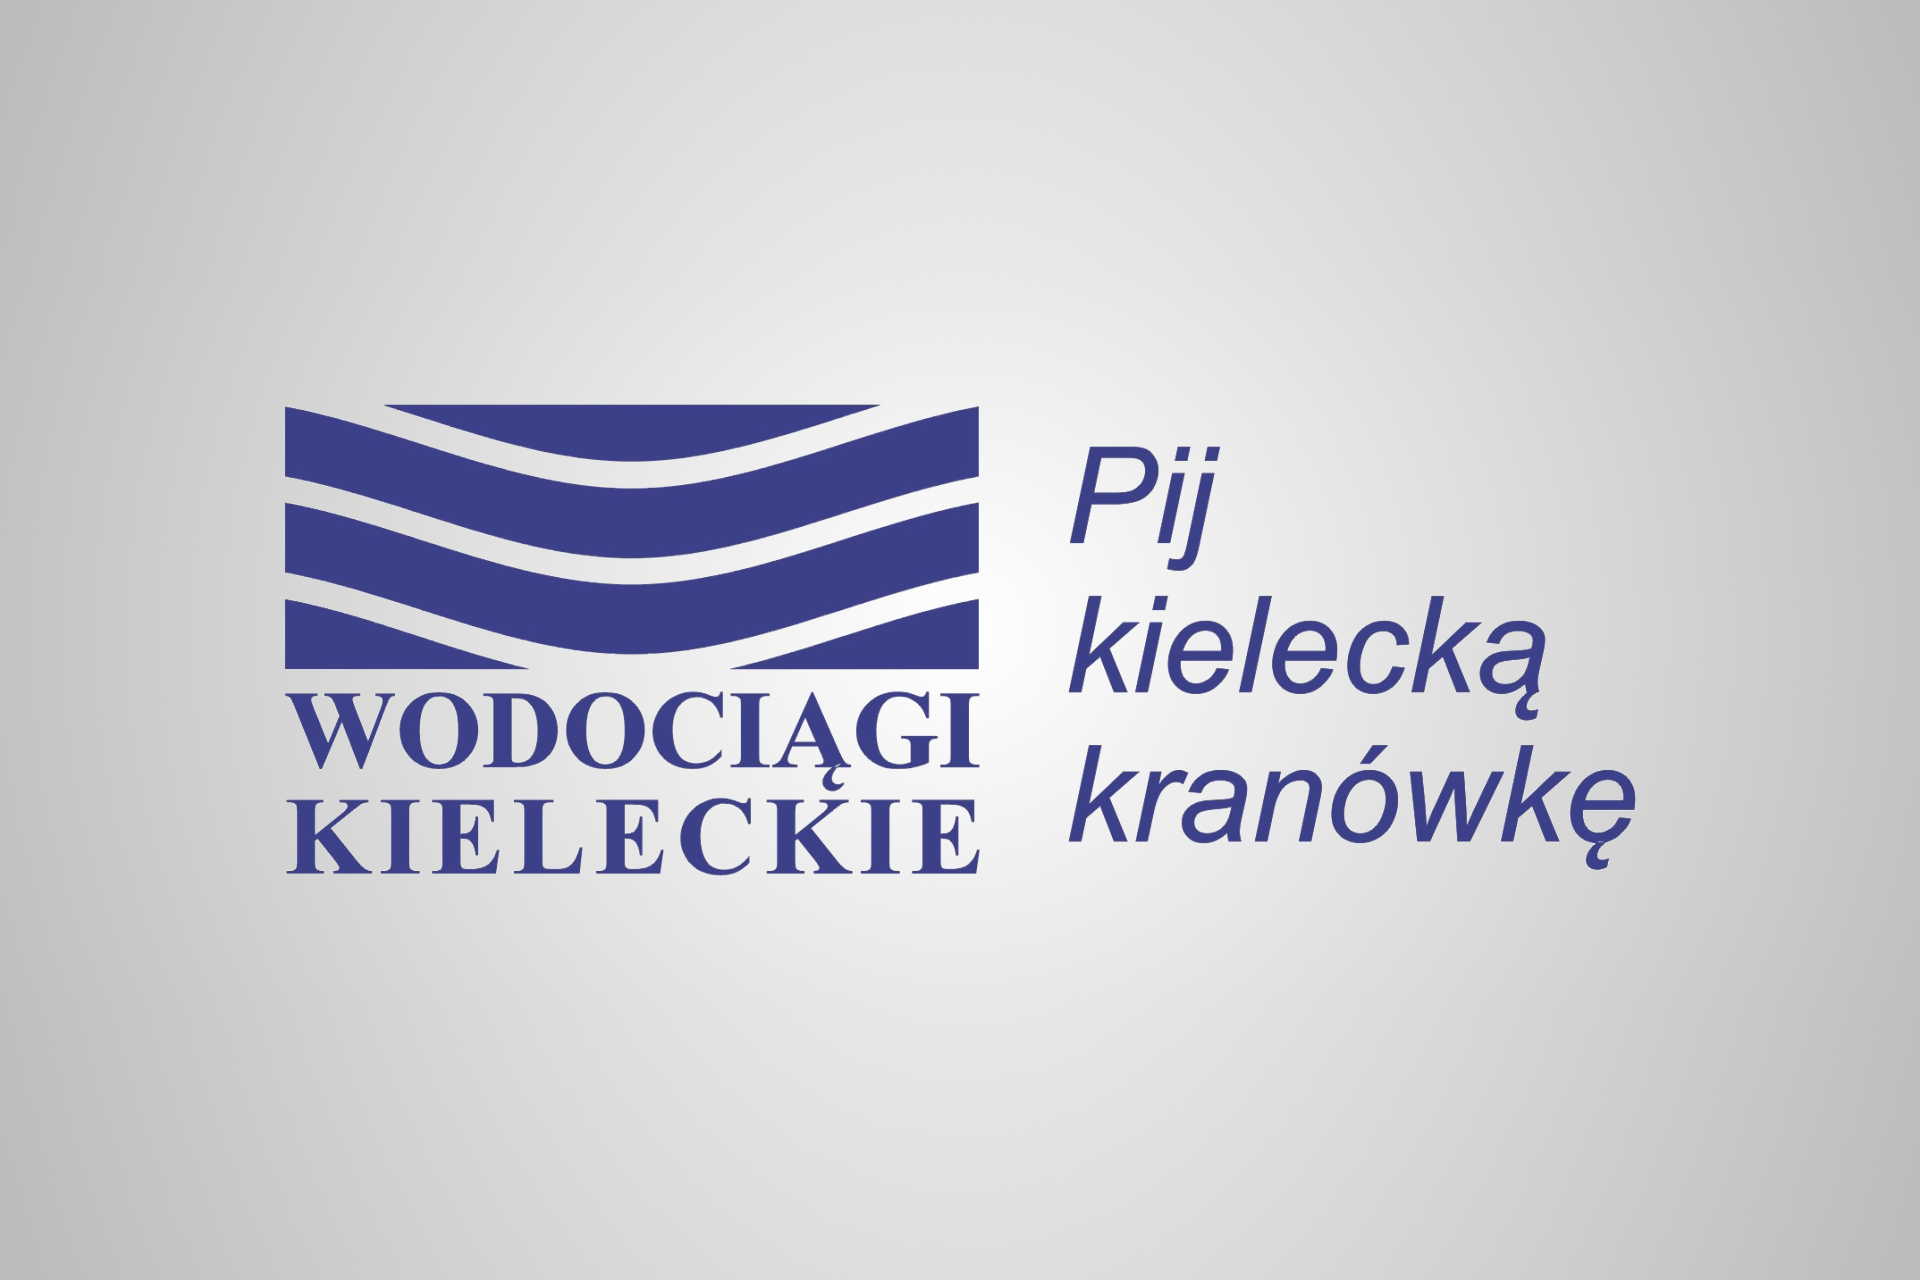 Wodociągi Kieleckie Logo.png